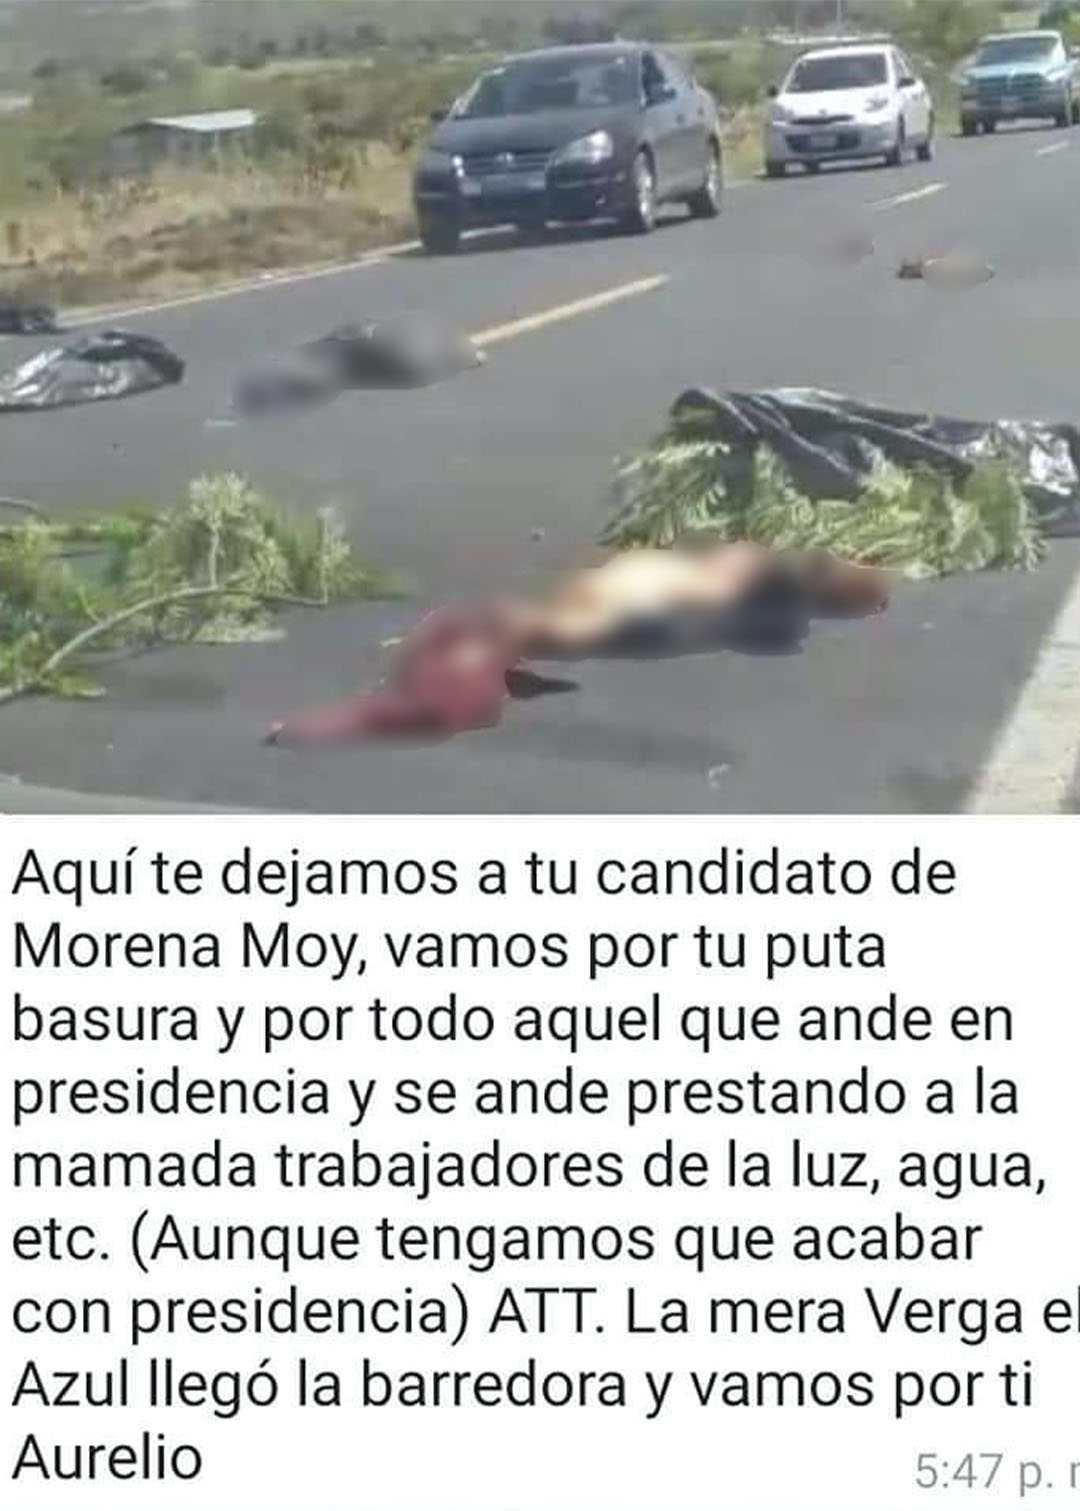 Los restos del ex candidato de Morena aparecieron descuartizados en Guanajuato (Foto: Twitter@fernand17704066)